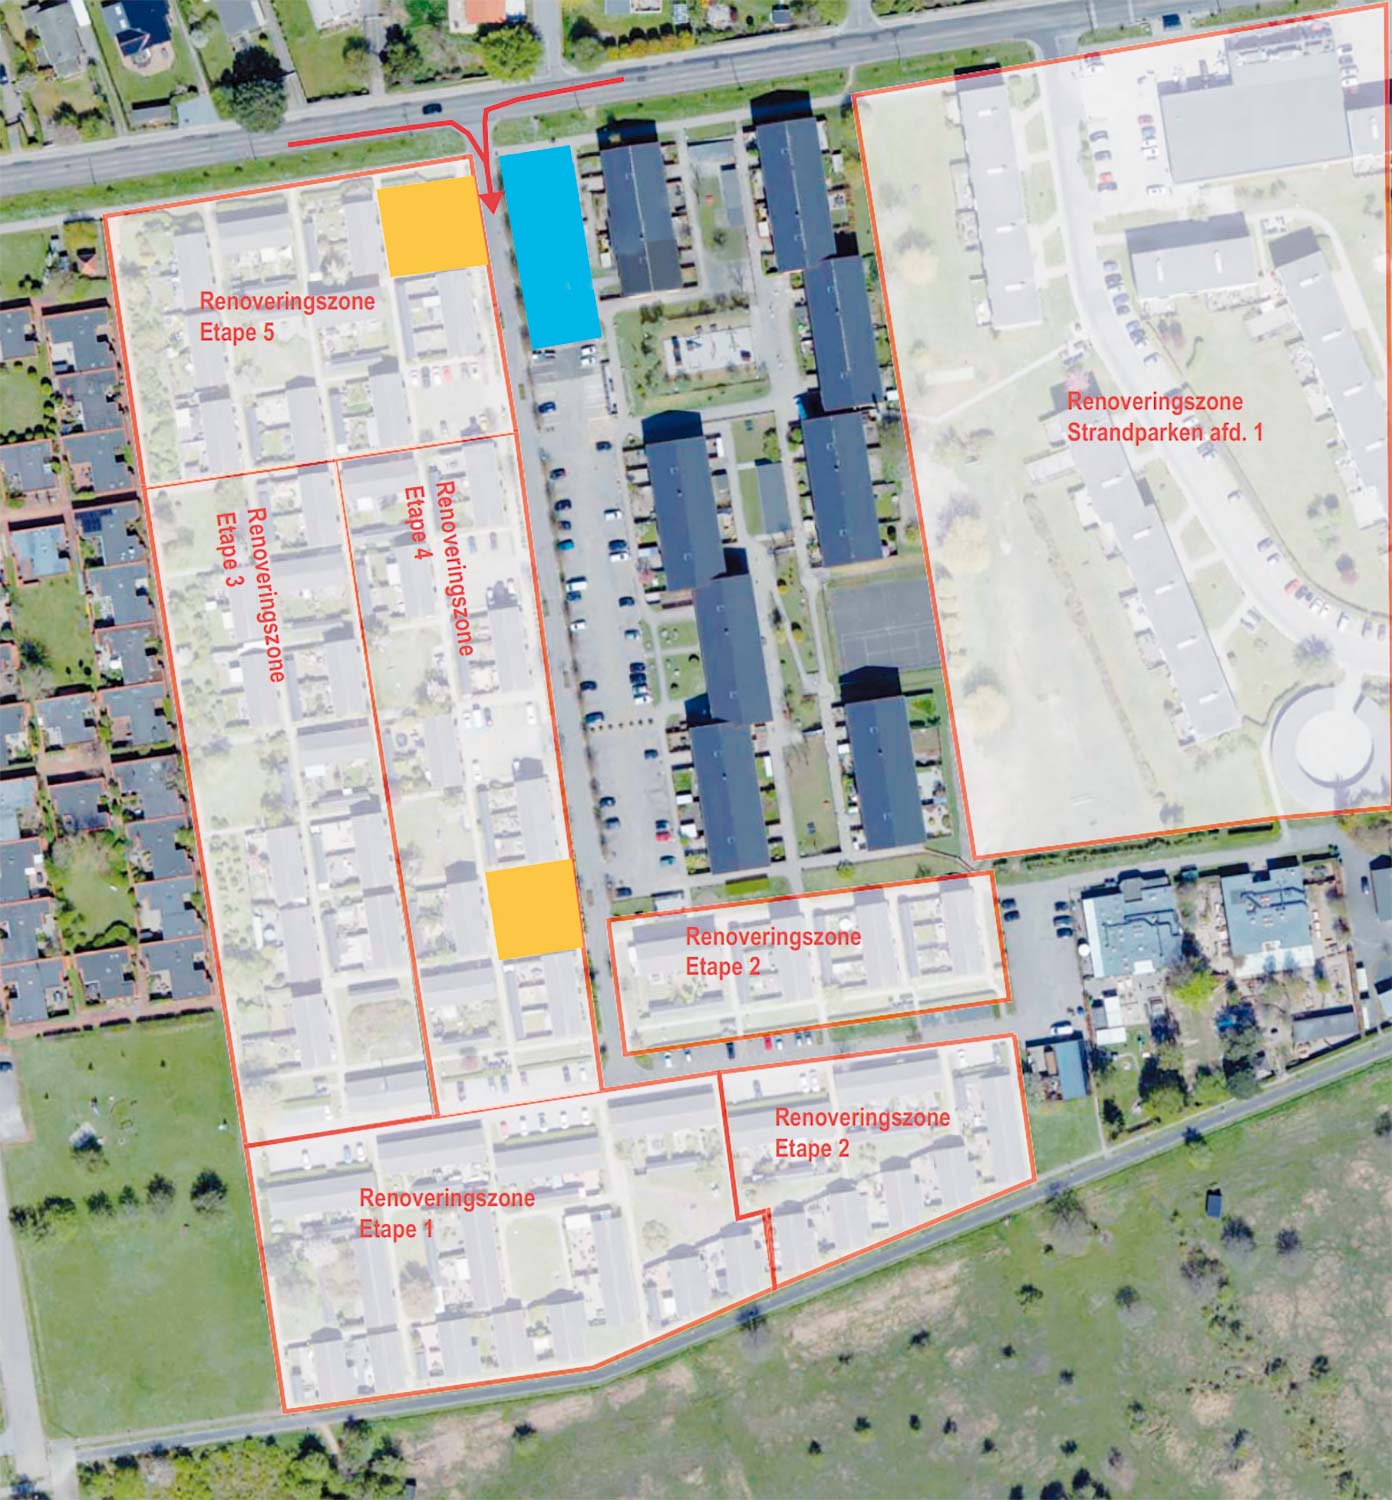 Det orange område er byggepladser, og det blå område er materialegård. Områderne med rød markering er renoveringszoner.